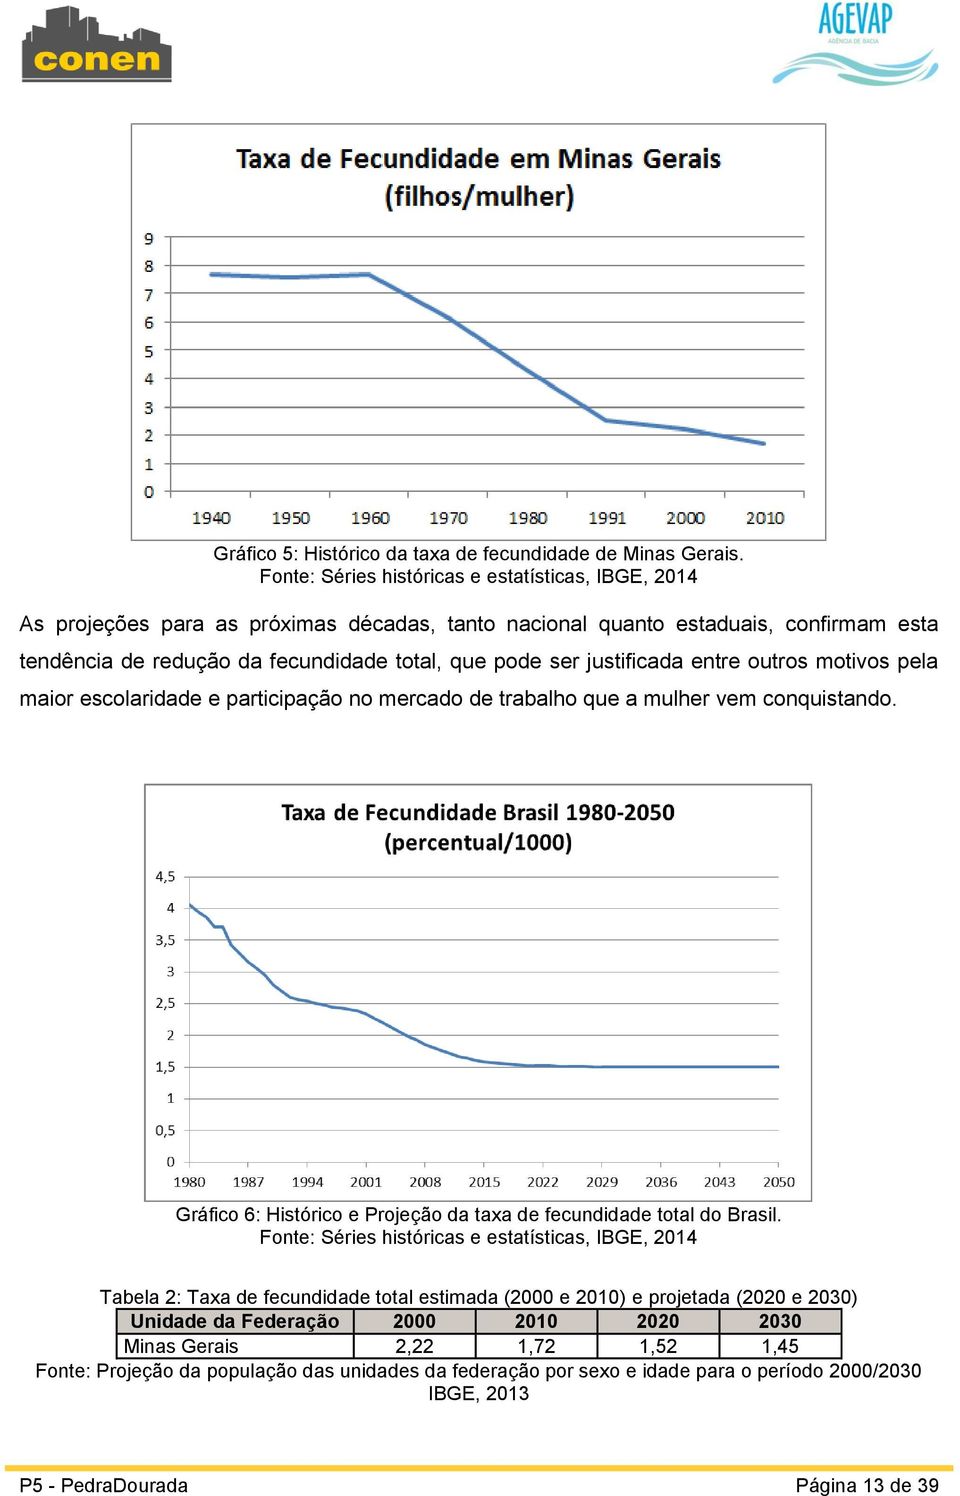 justificada entre outros motivos pela maior escolaridade e participação no mercado de trabalho que a mulher vem conquistando. Gráfico 6: Histórico e Projeção da taxa de fecundidade total do Brasil.